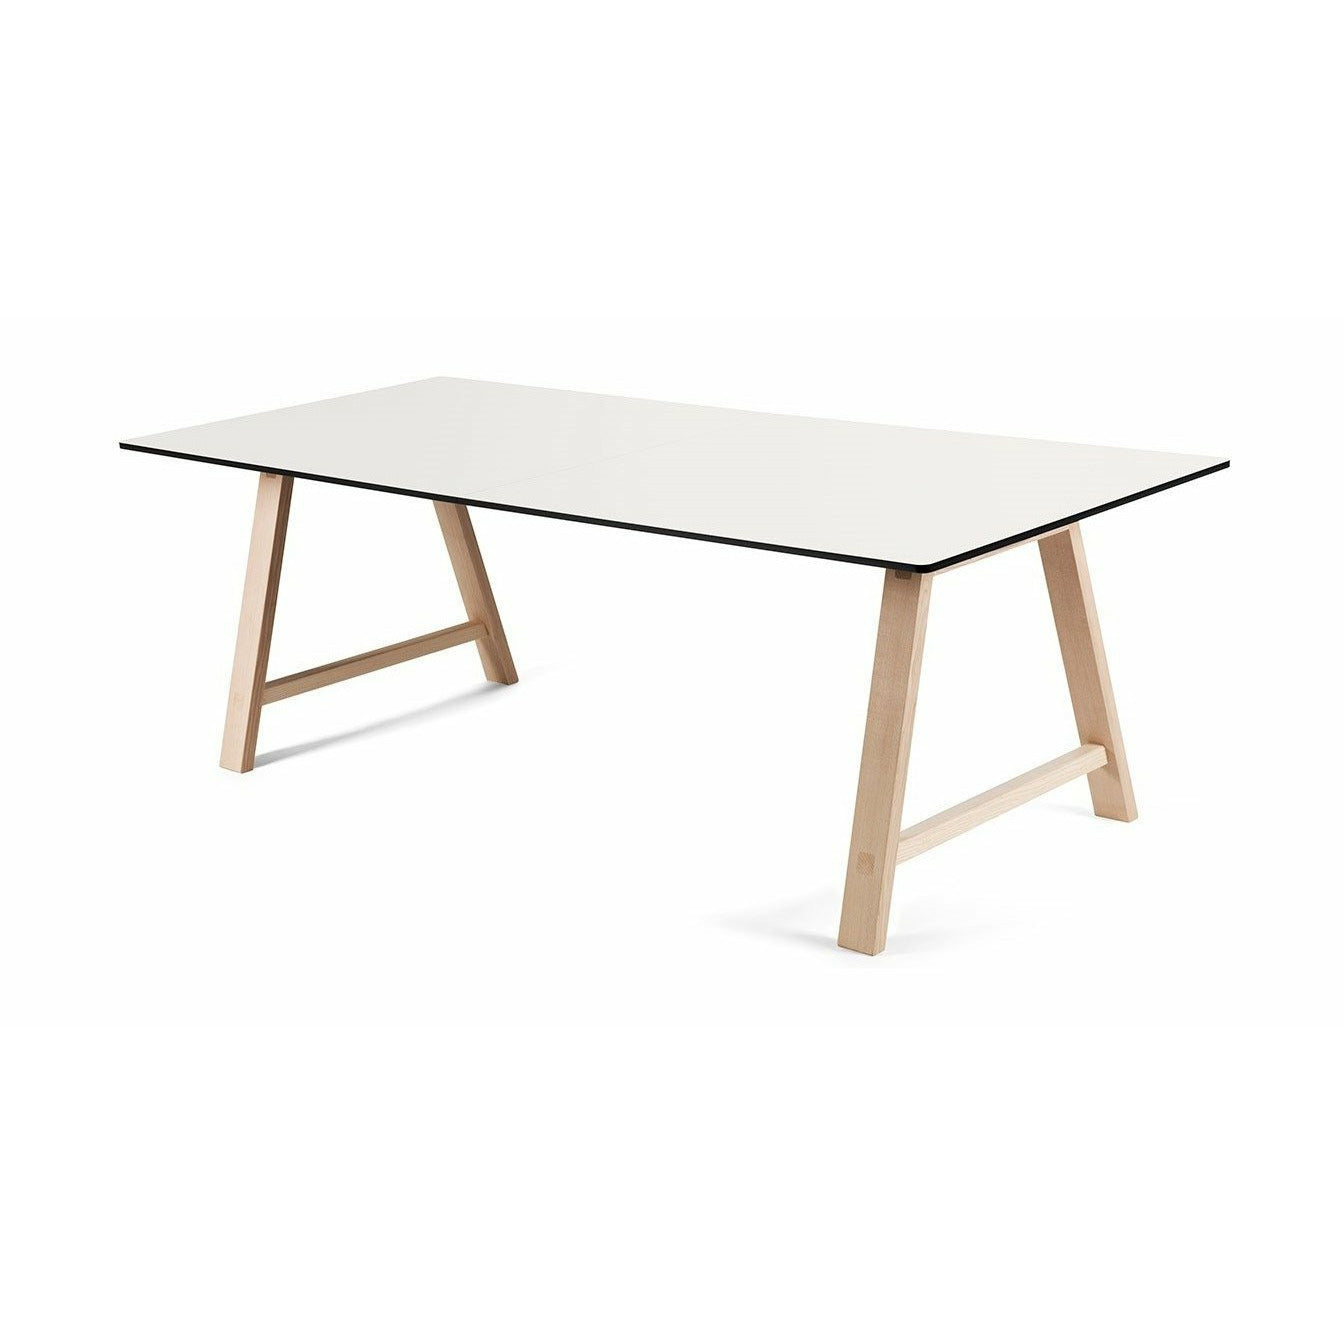 Andersen Furniture T1 Udtræksbord, Hvid Laminat, Sæbet Eg Understel, 220cm